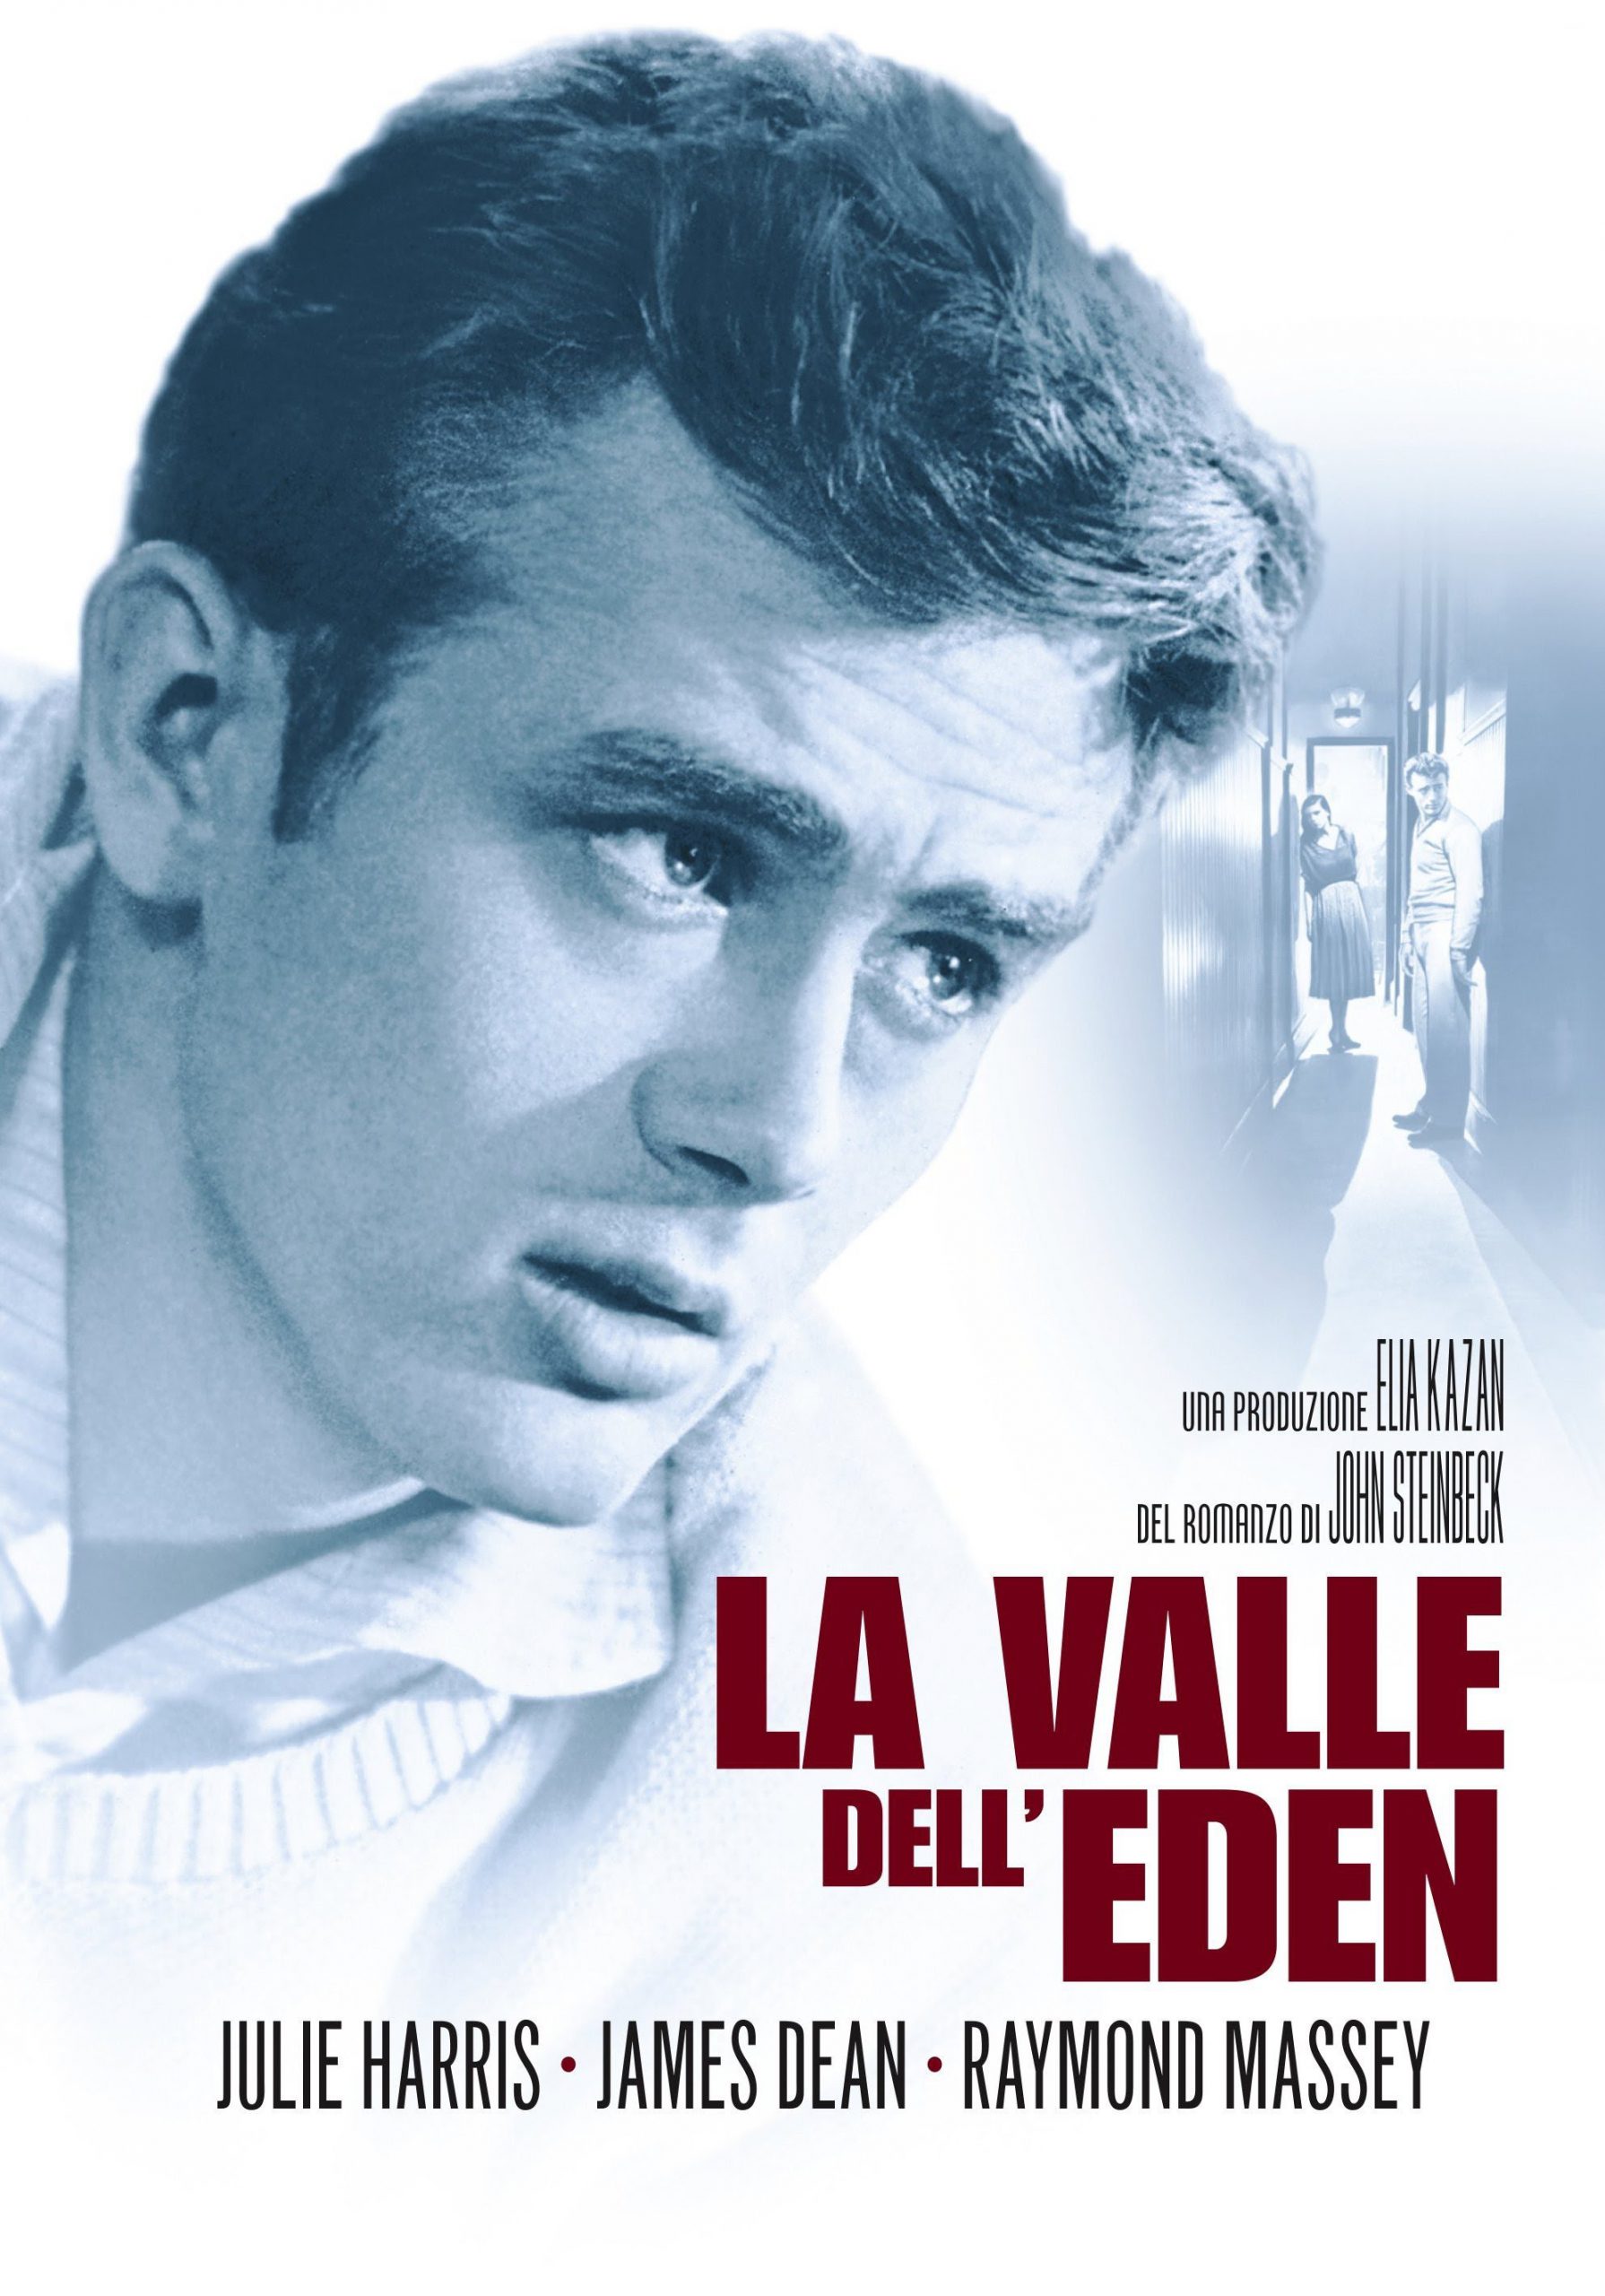 La valle dell’Eden [HD] (1955)